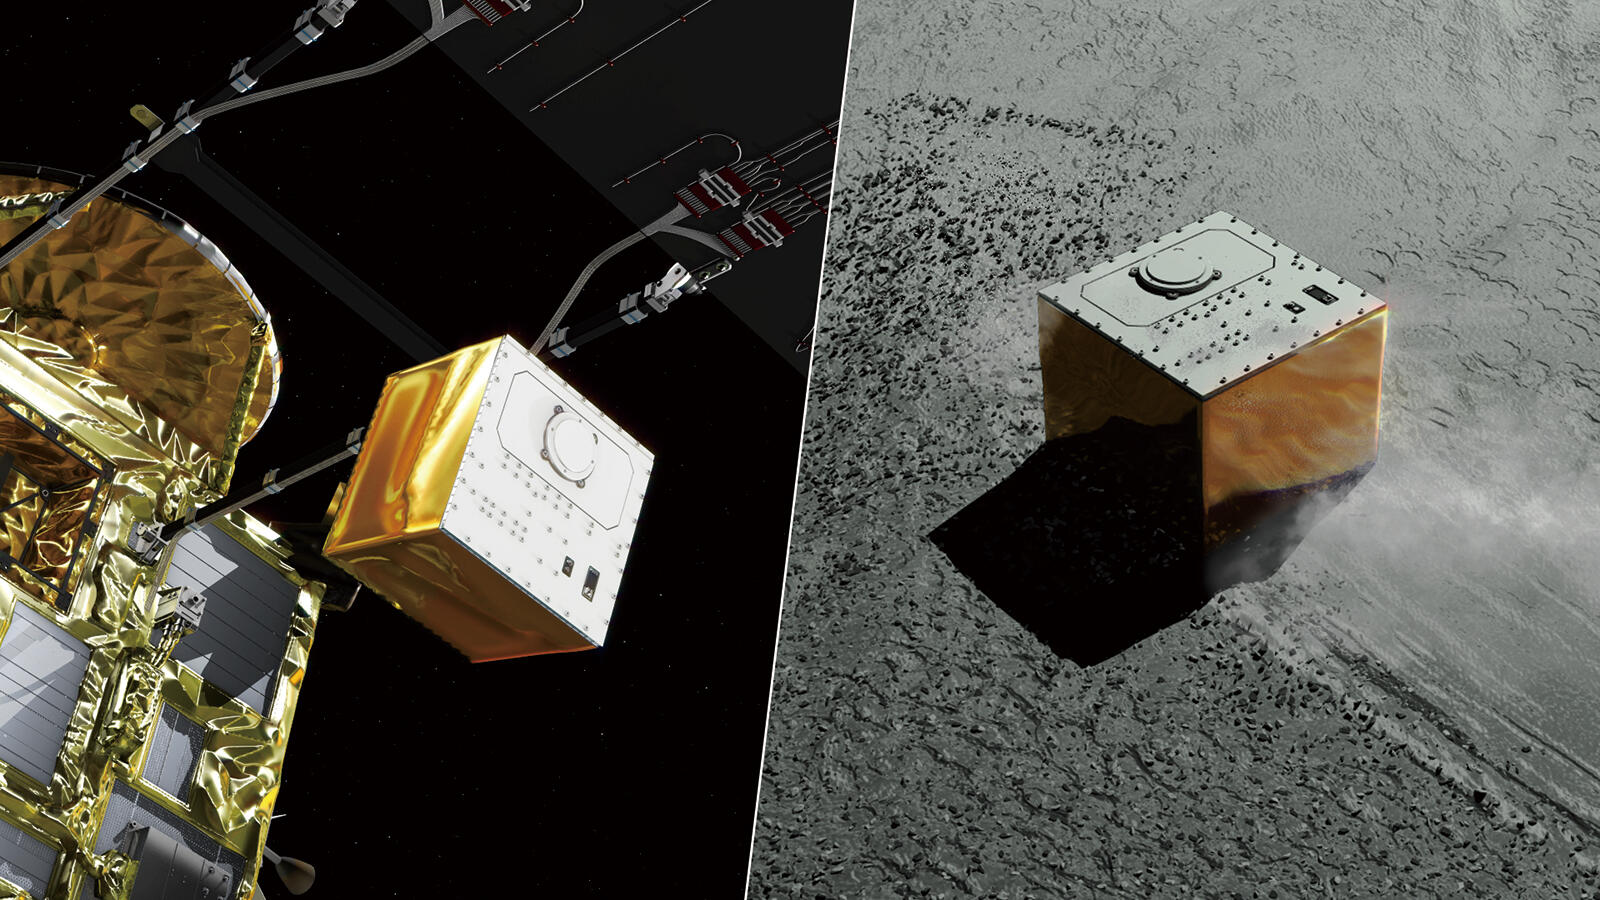 CG image of small lander MASCOT onboard Hayabusa2.